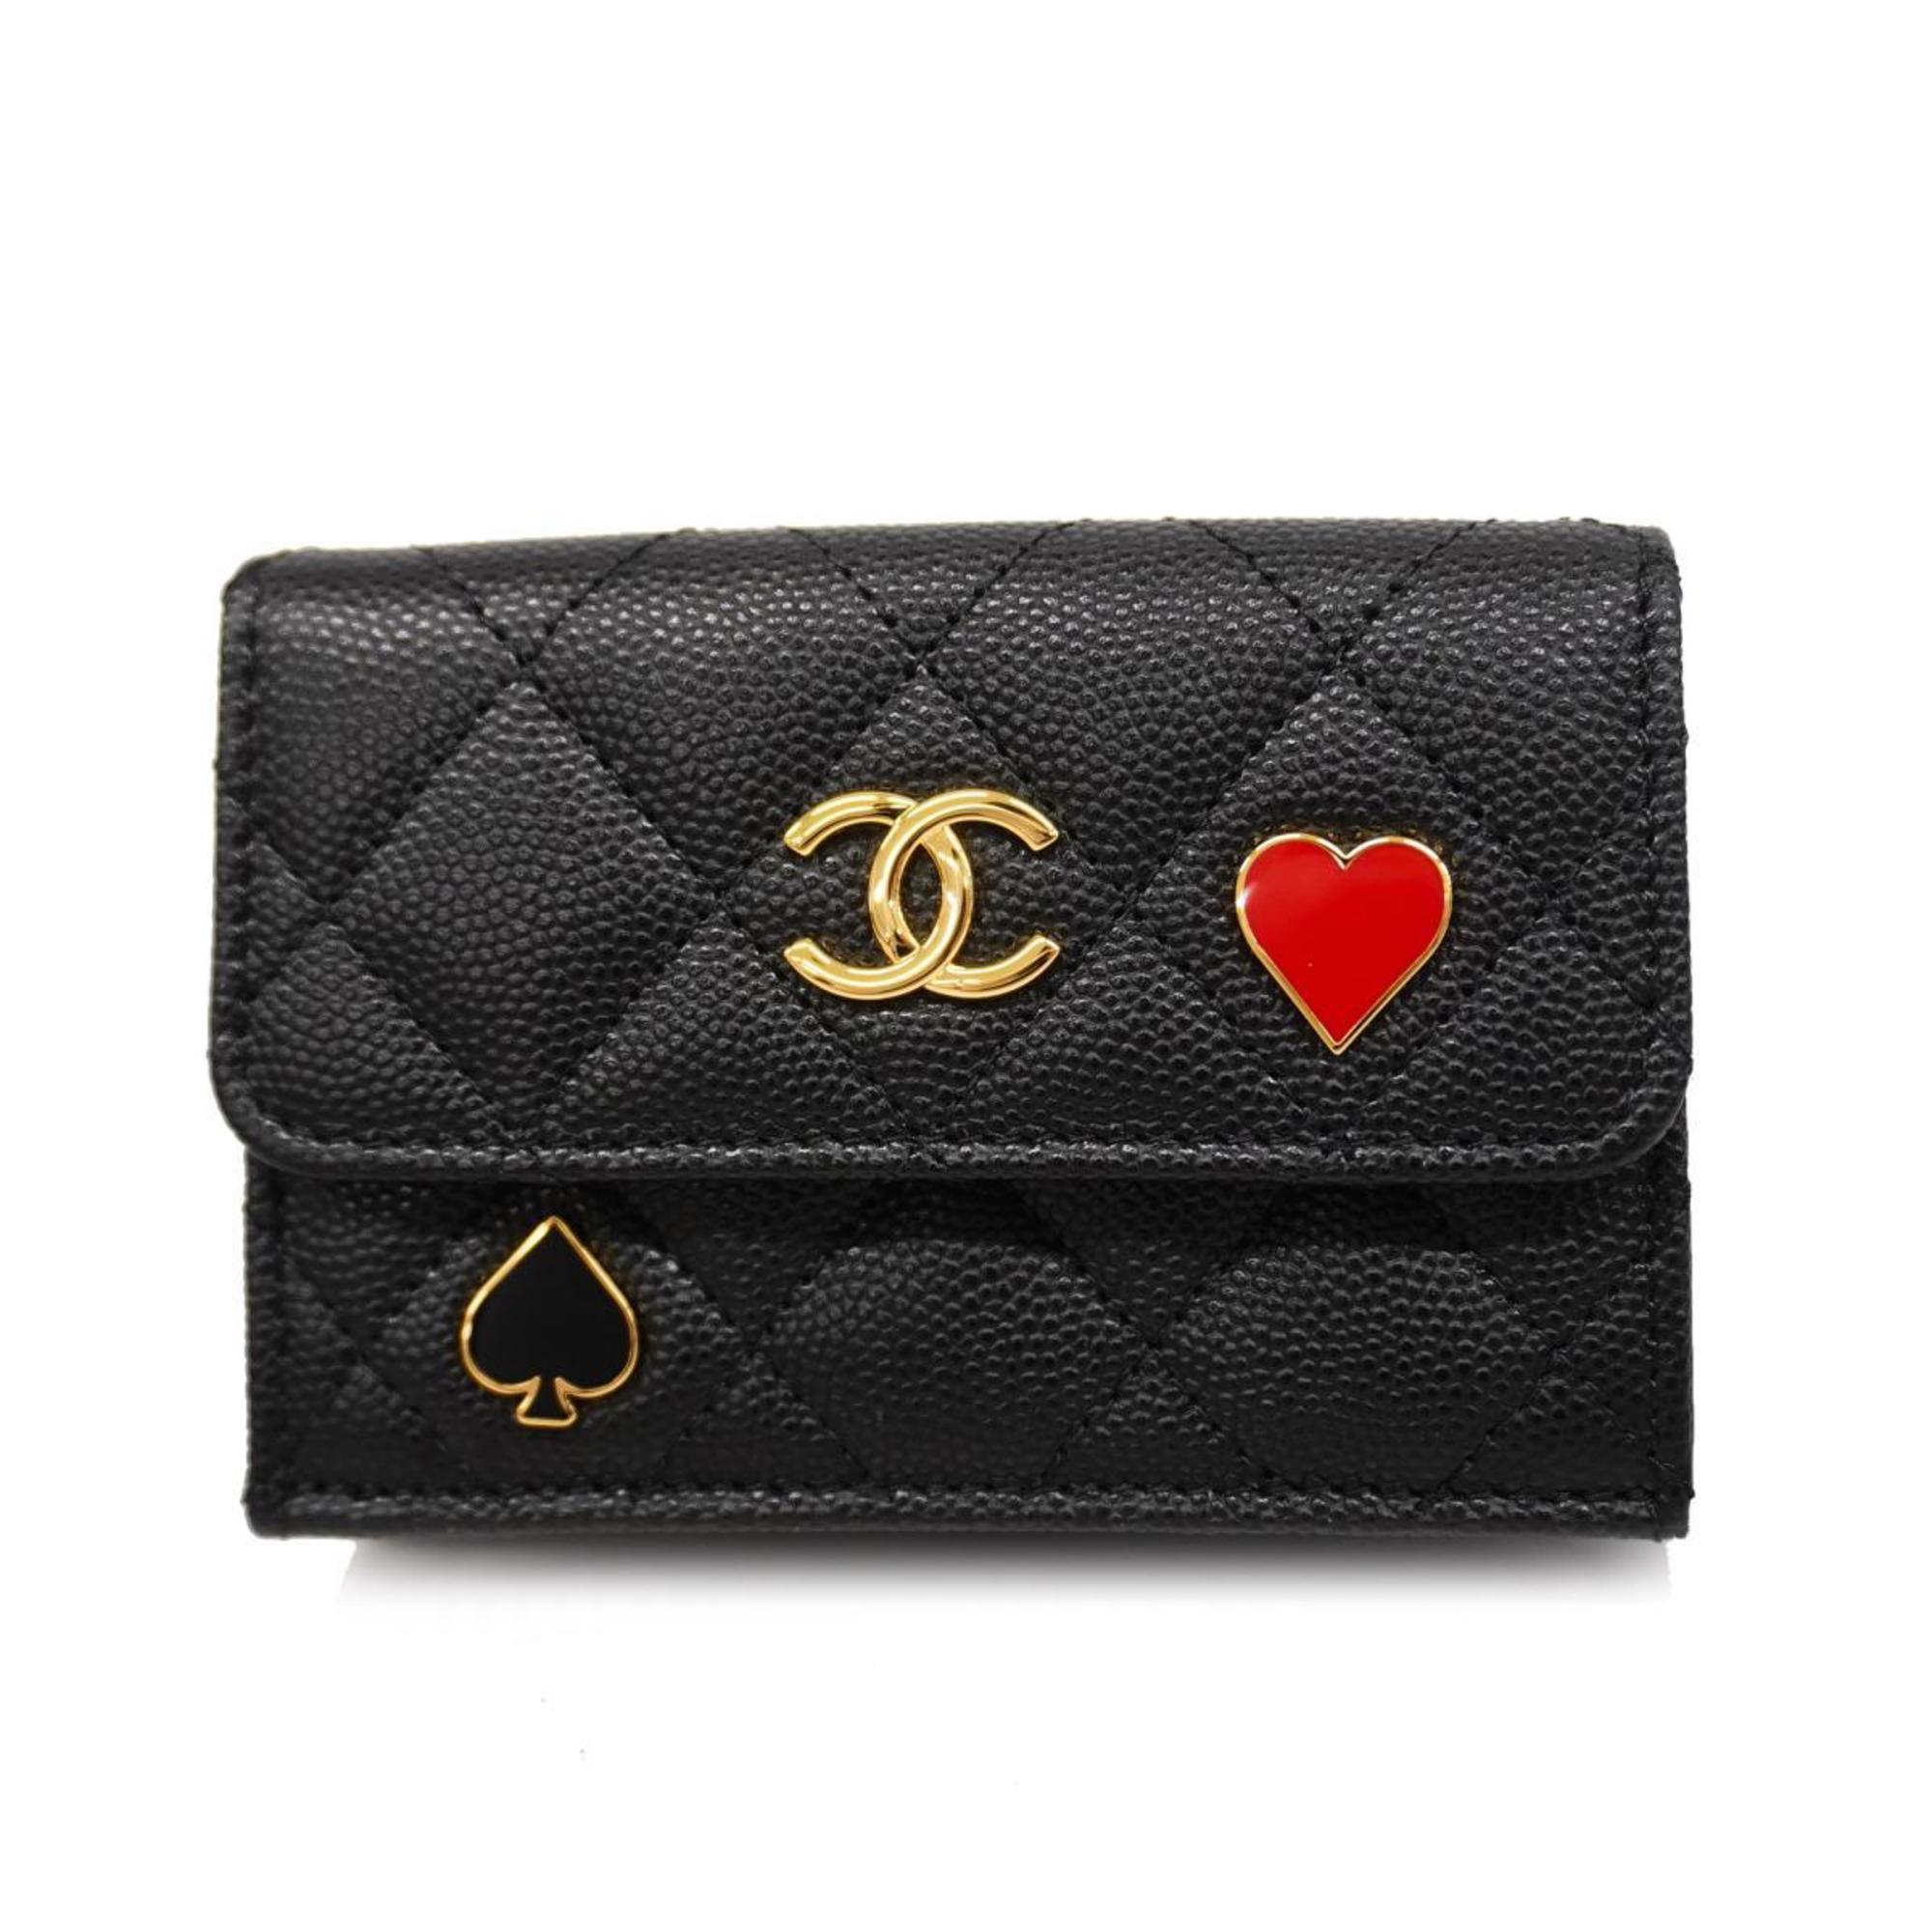 シャネル(Chanel) シャネル 三つ折り財布 マトラッセ キャビアスキン